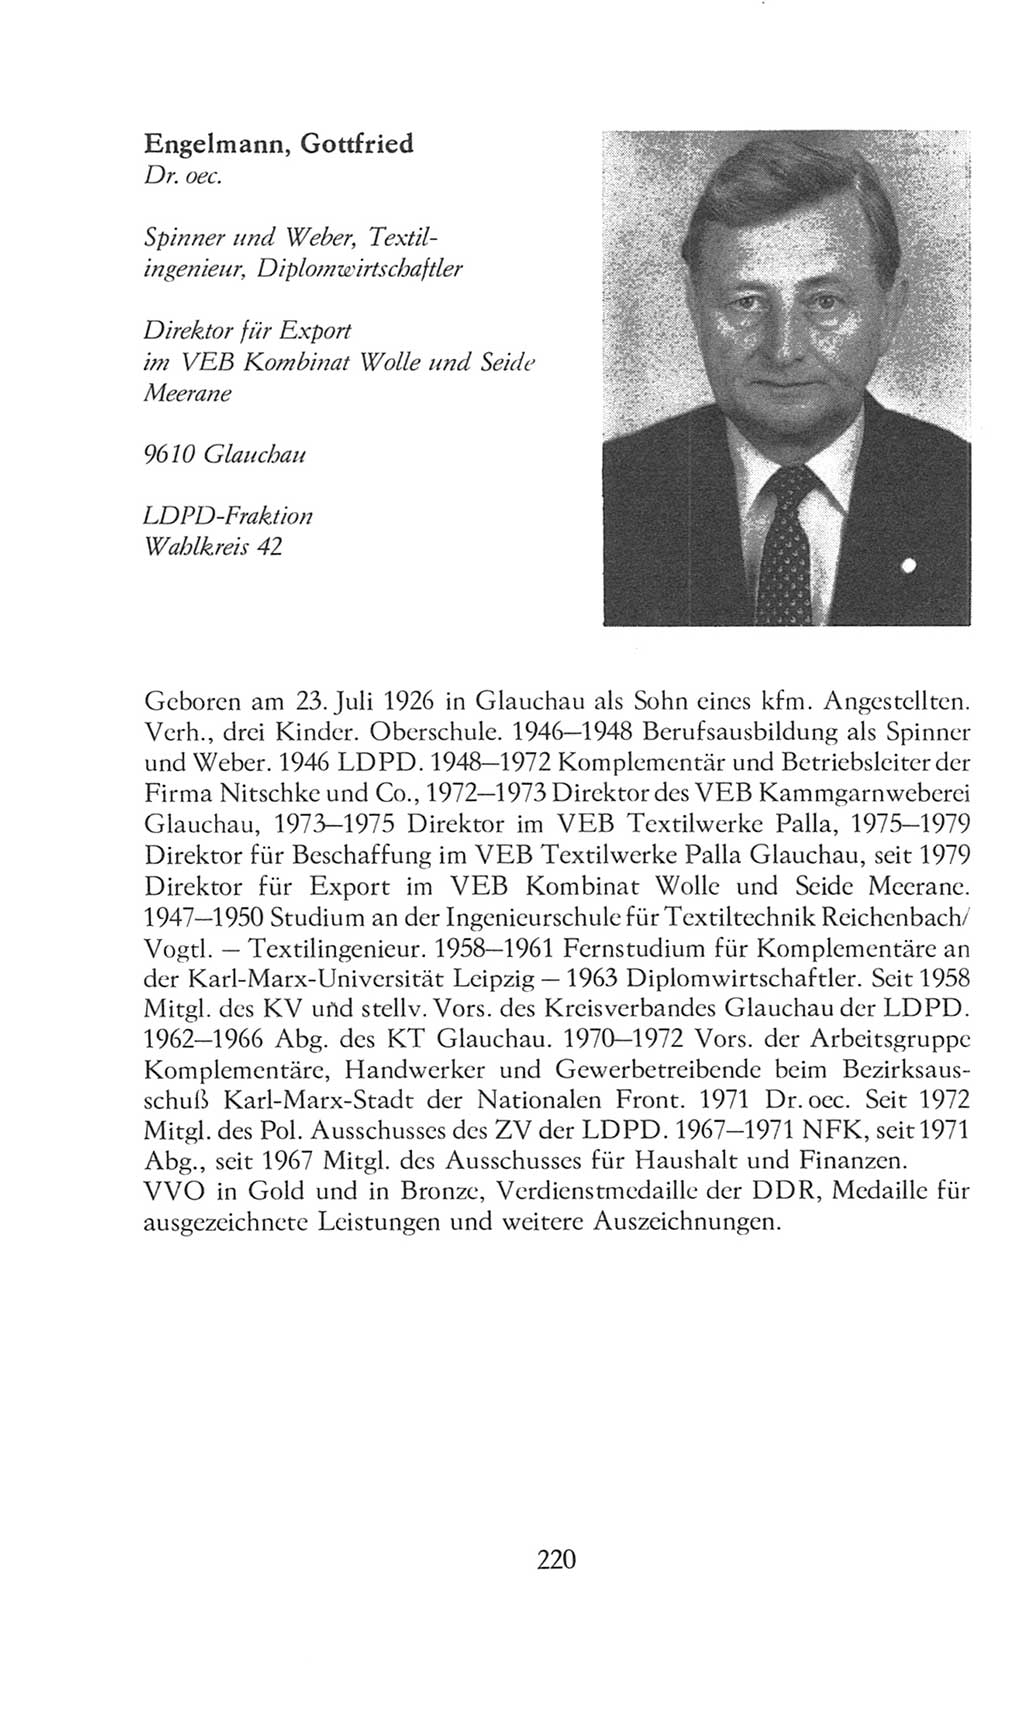 Volkskammer (VK) der Deutschen Demokratischen Republik (DDR), 8. Wahlperiode 1981-1986, Seite 220 (VK. DDR 8. WP. 1981-1986, S. 220)